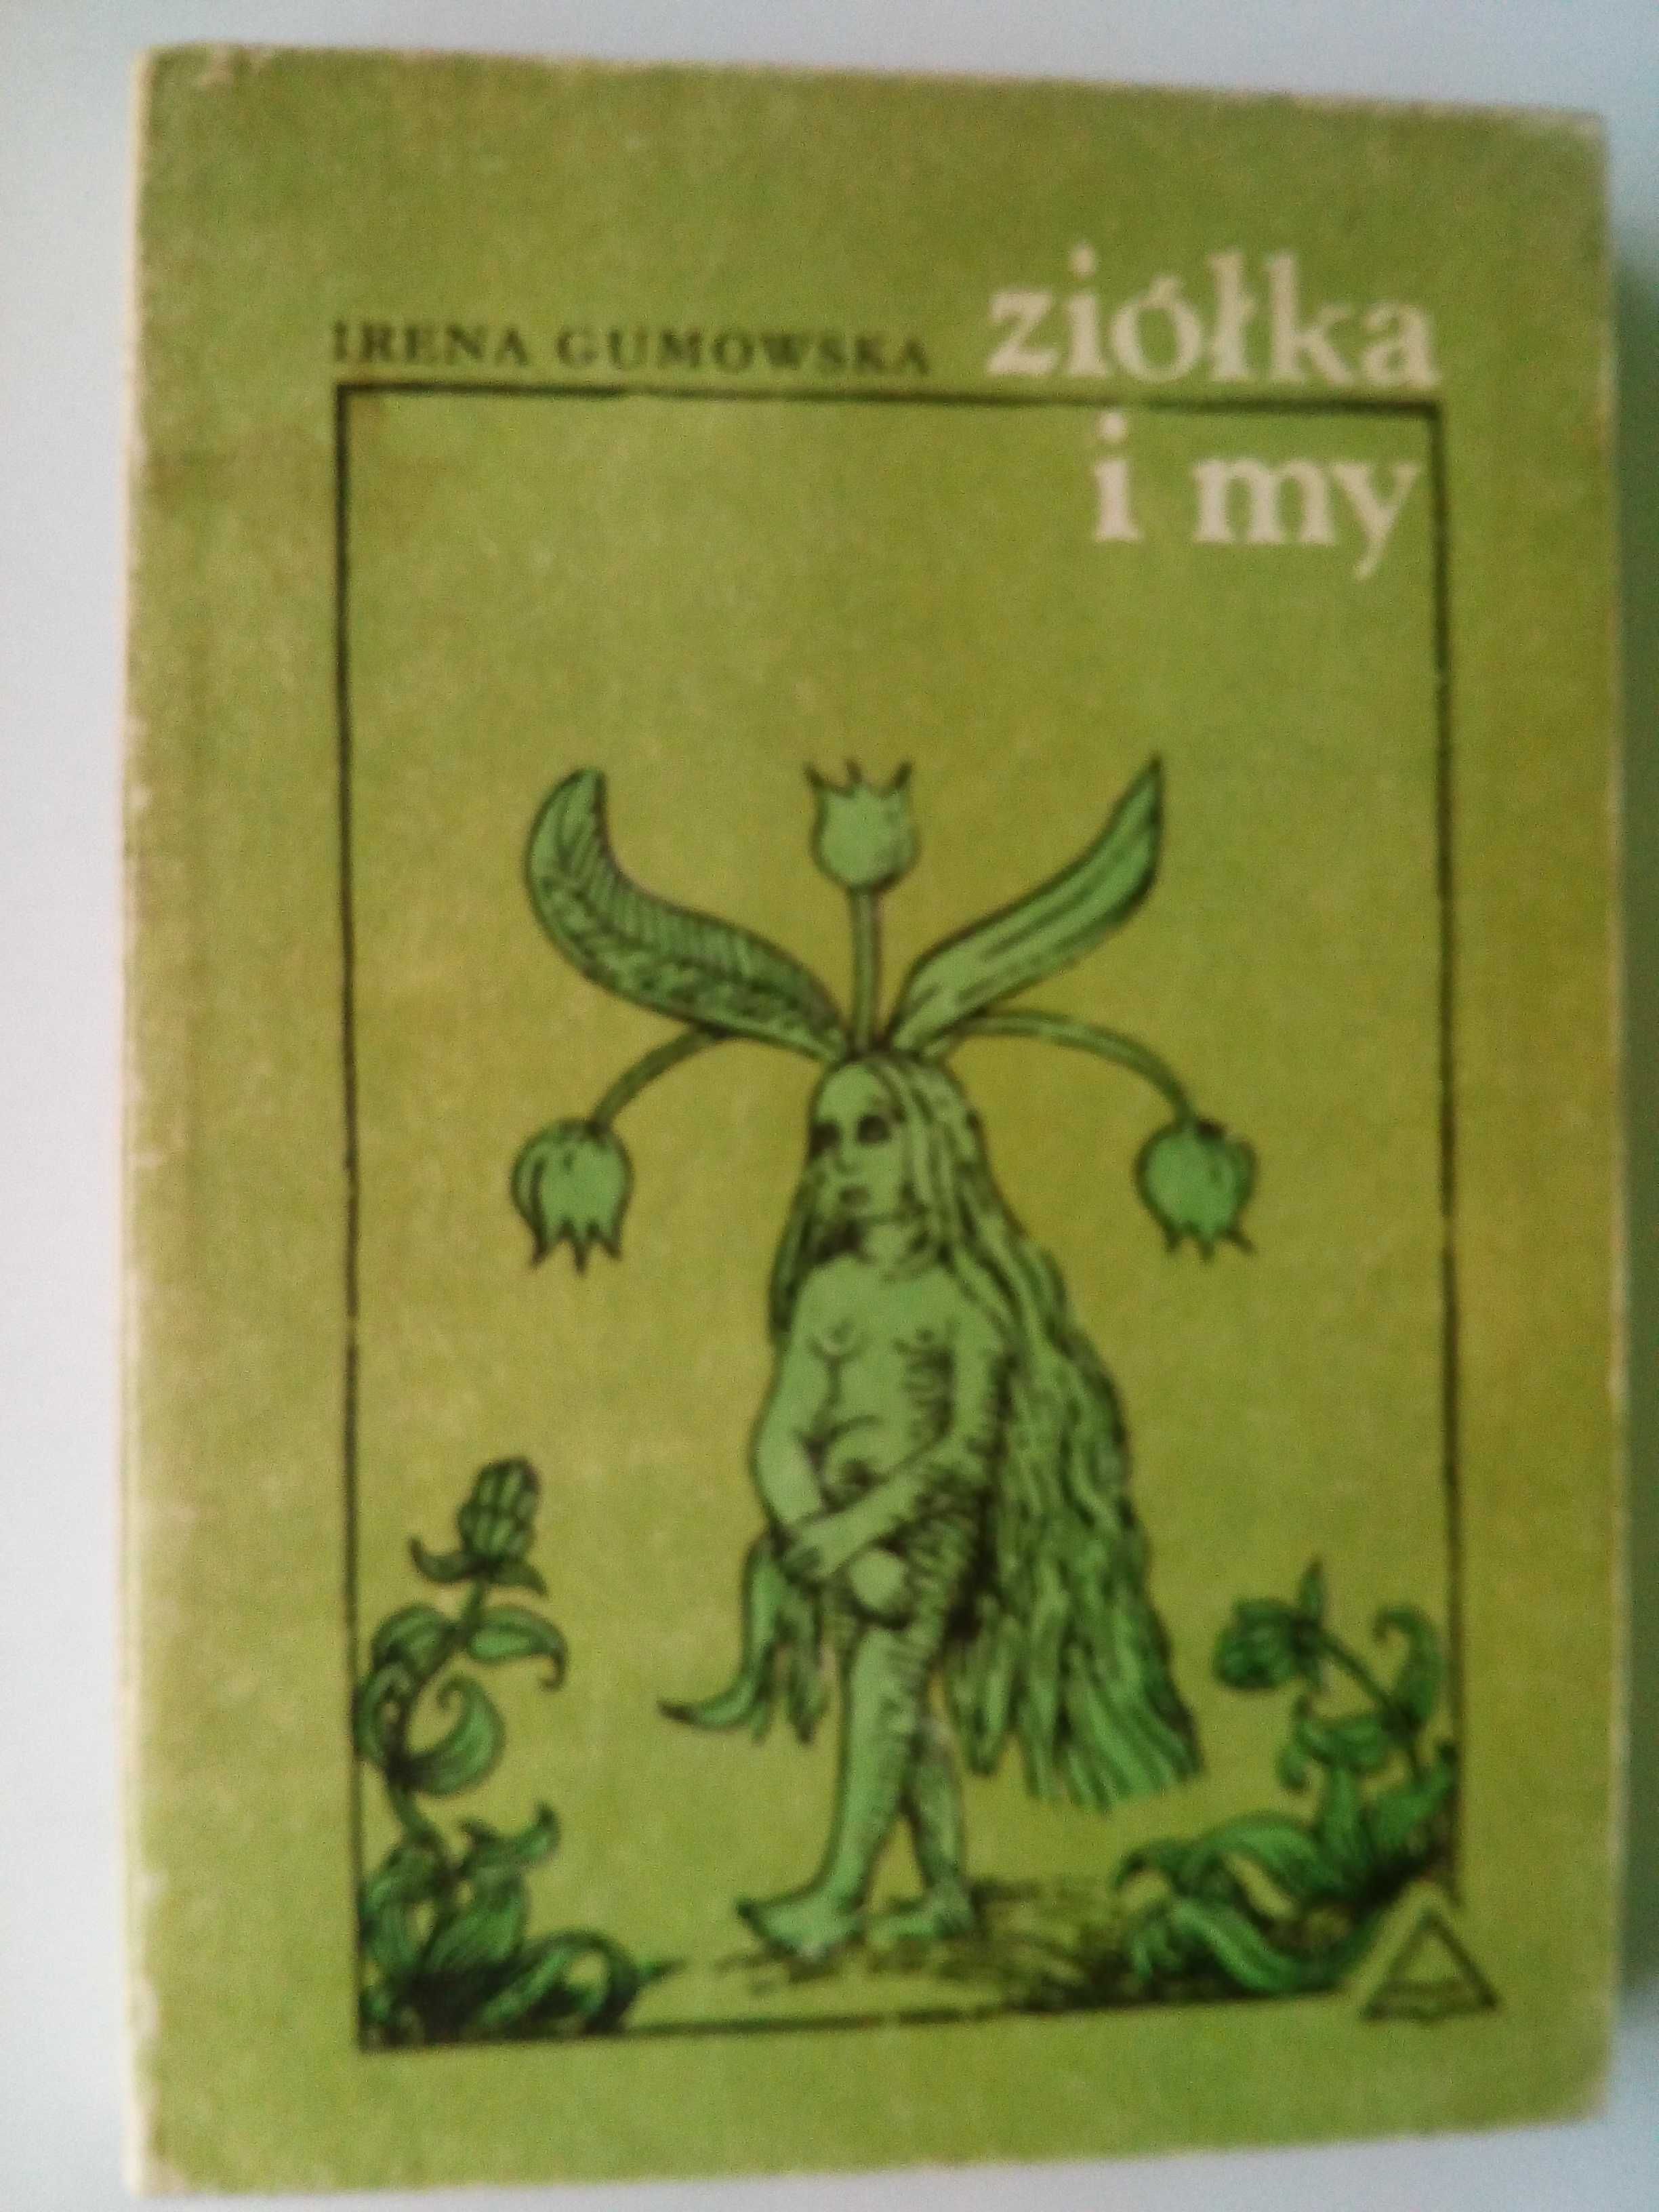 Ziółka i my- Irena Gumowska